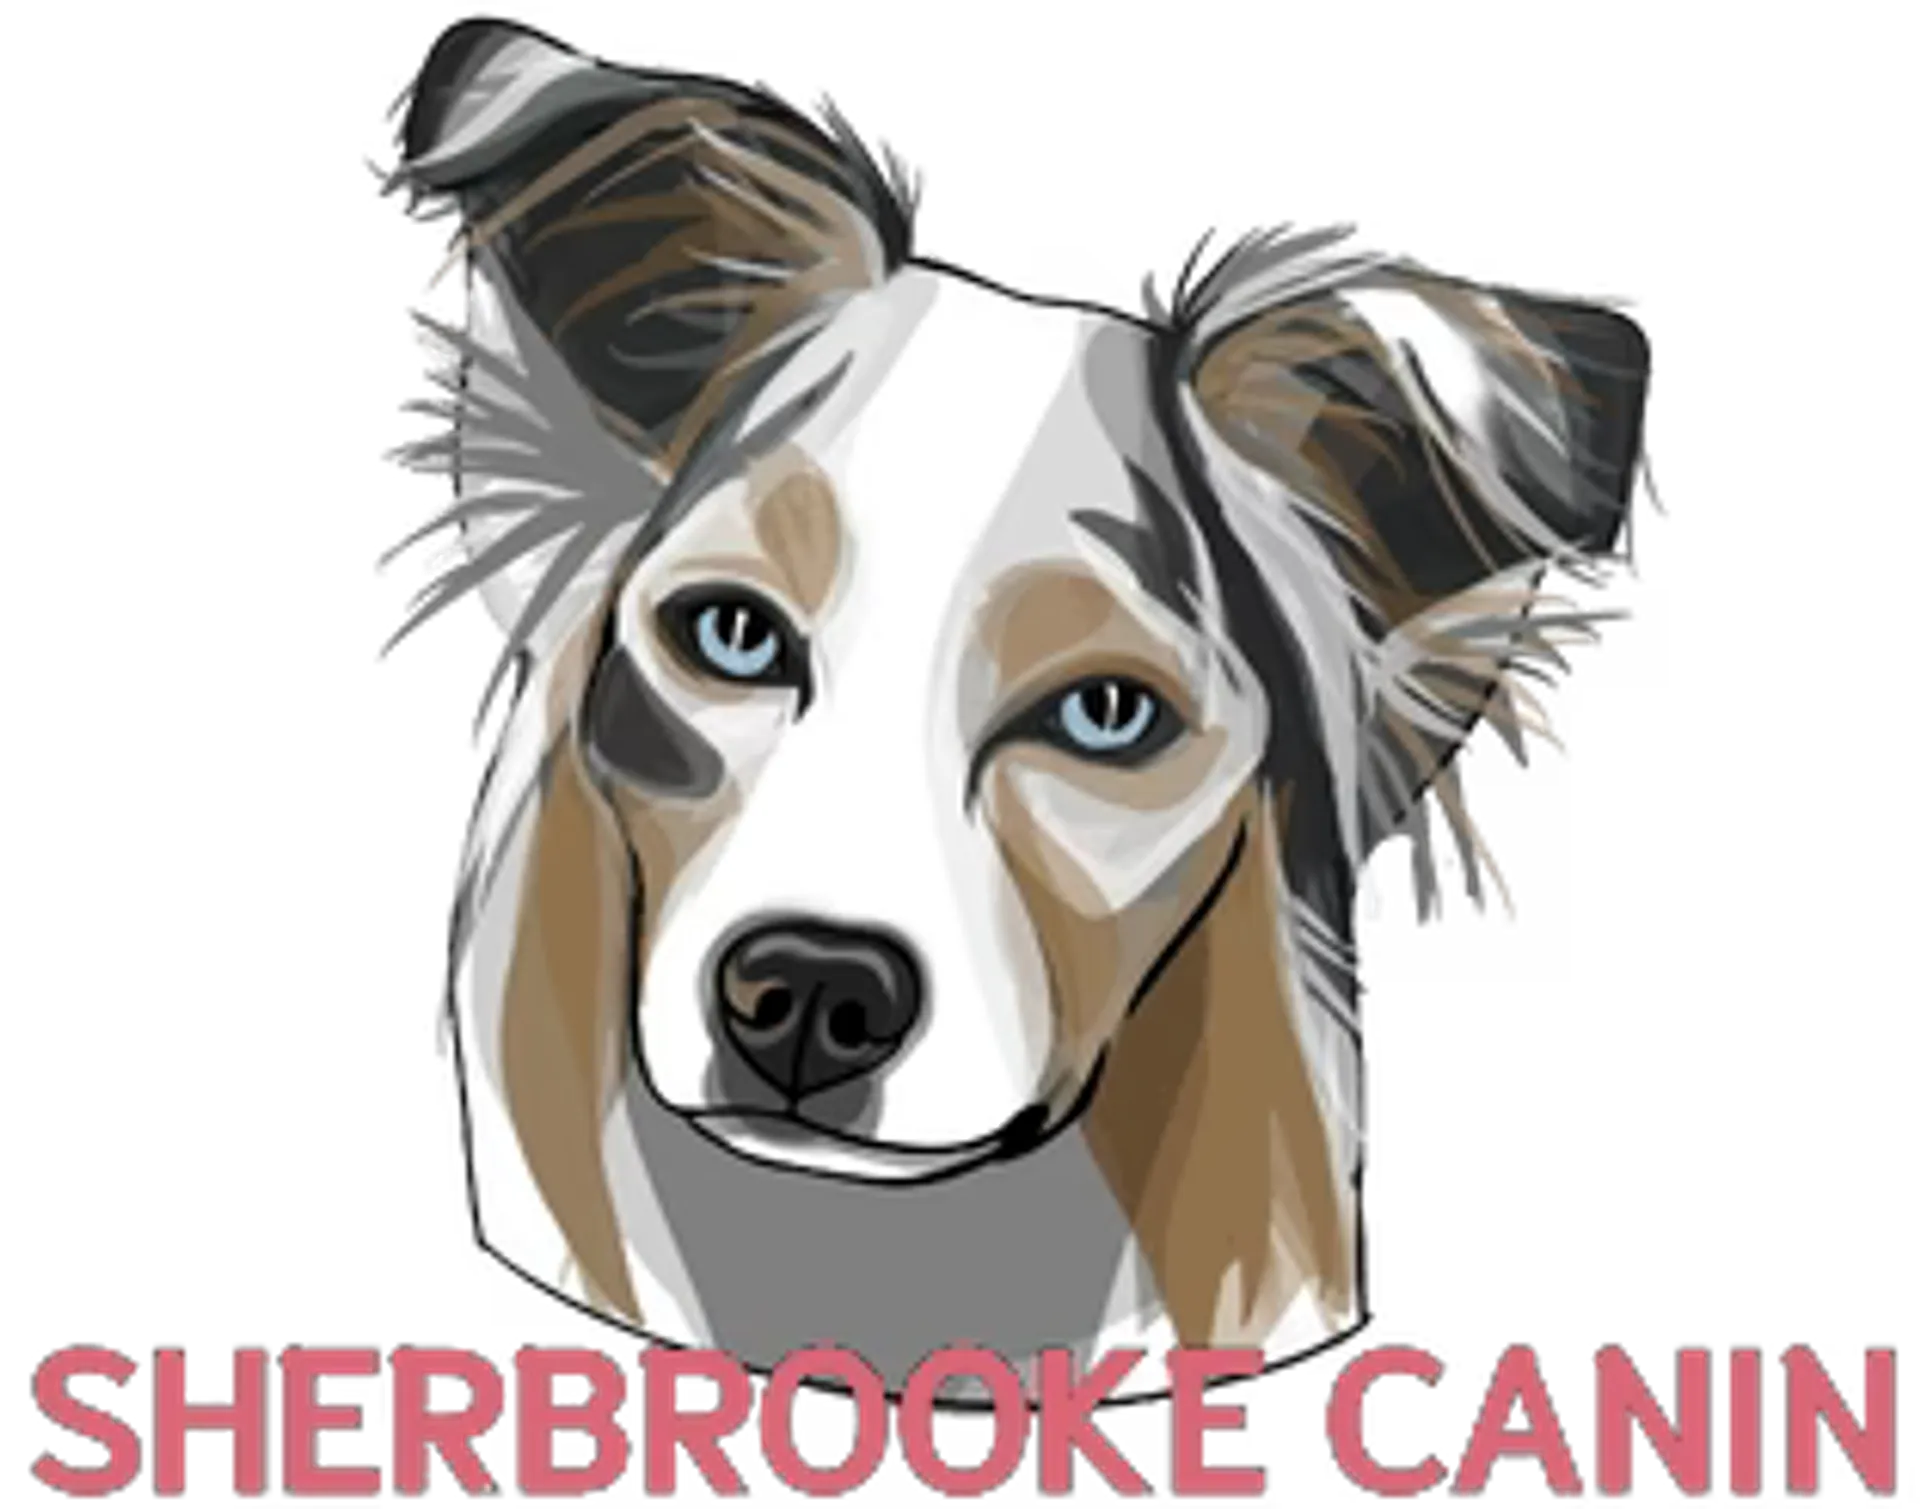 SHERBROOKE CANIN logo de circulaire